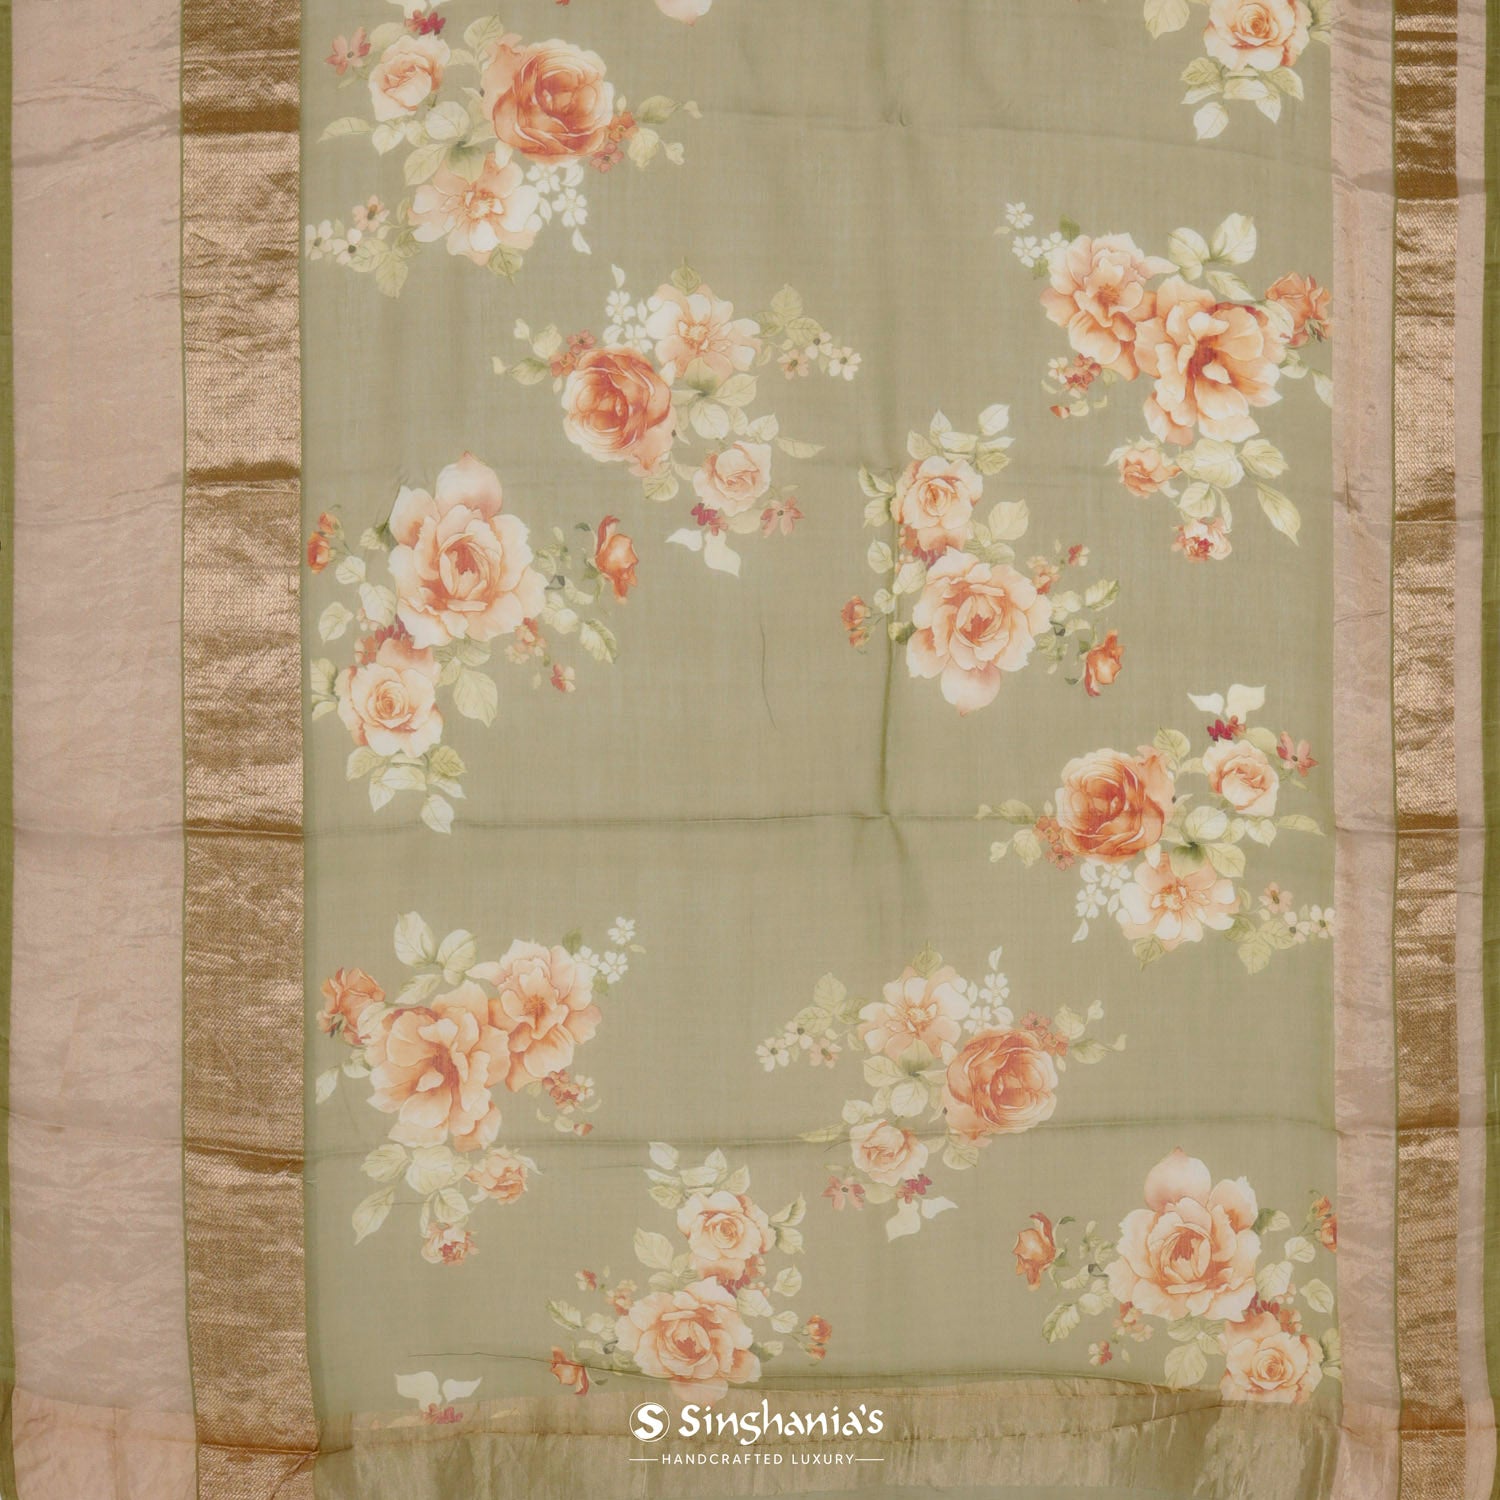 Laurel Green Printed Maheshwari Saree With Floral Pattern